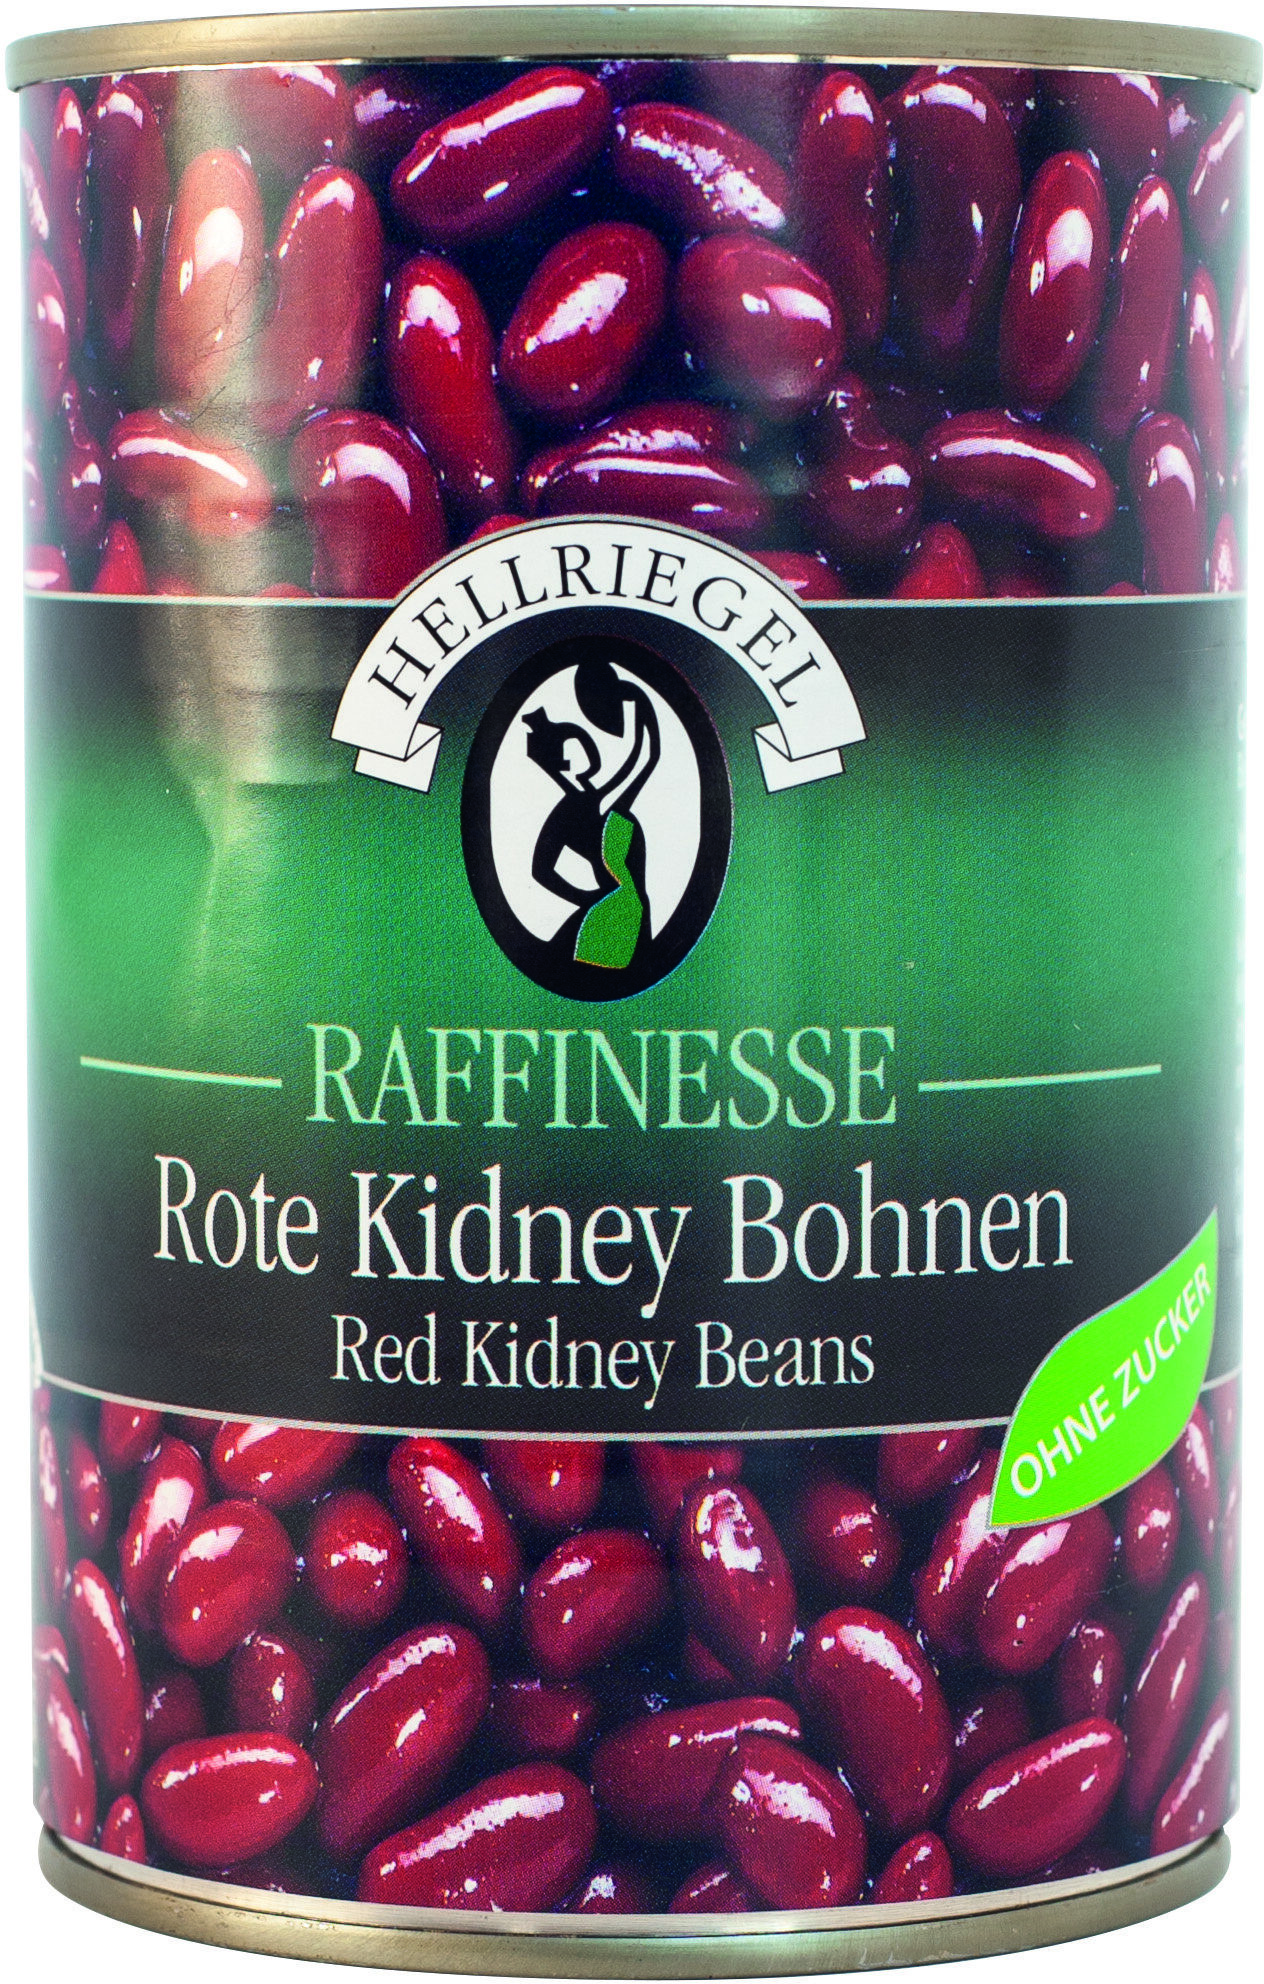 Hellriegel Raffinesse Kidney-Bohnen rot - Produkt